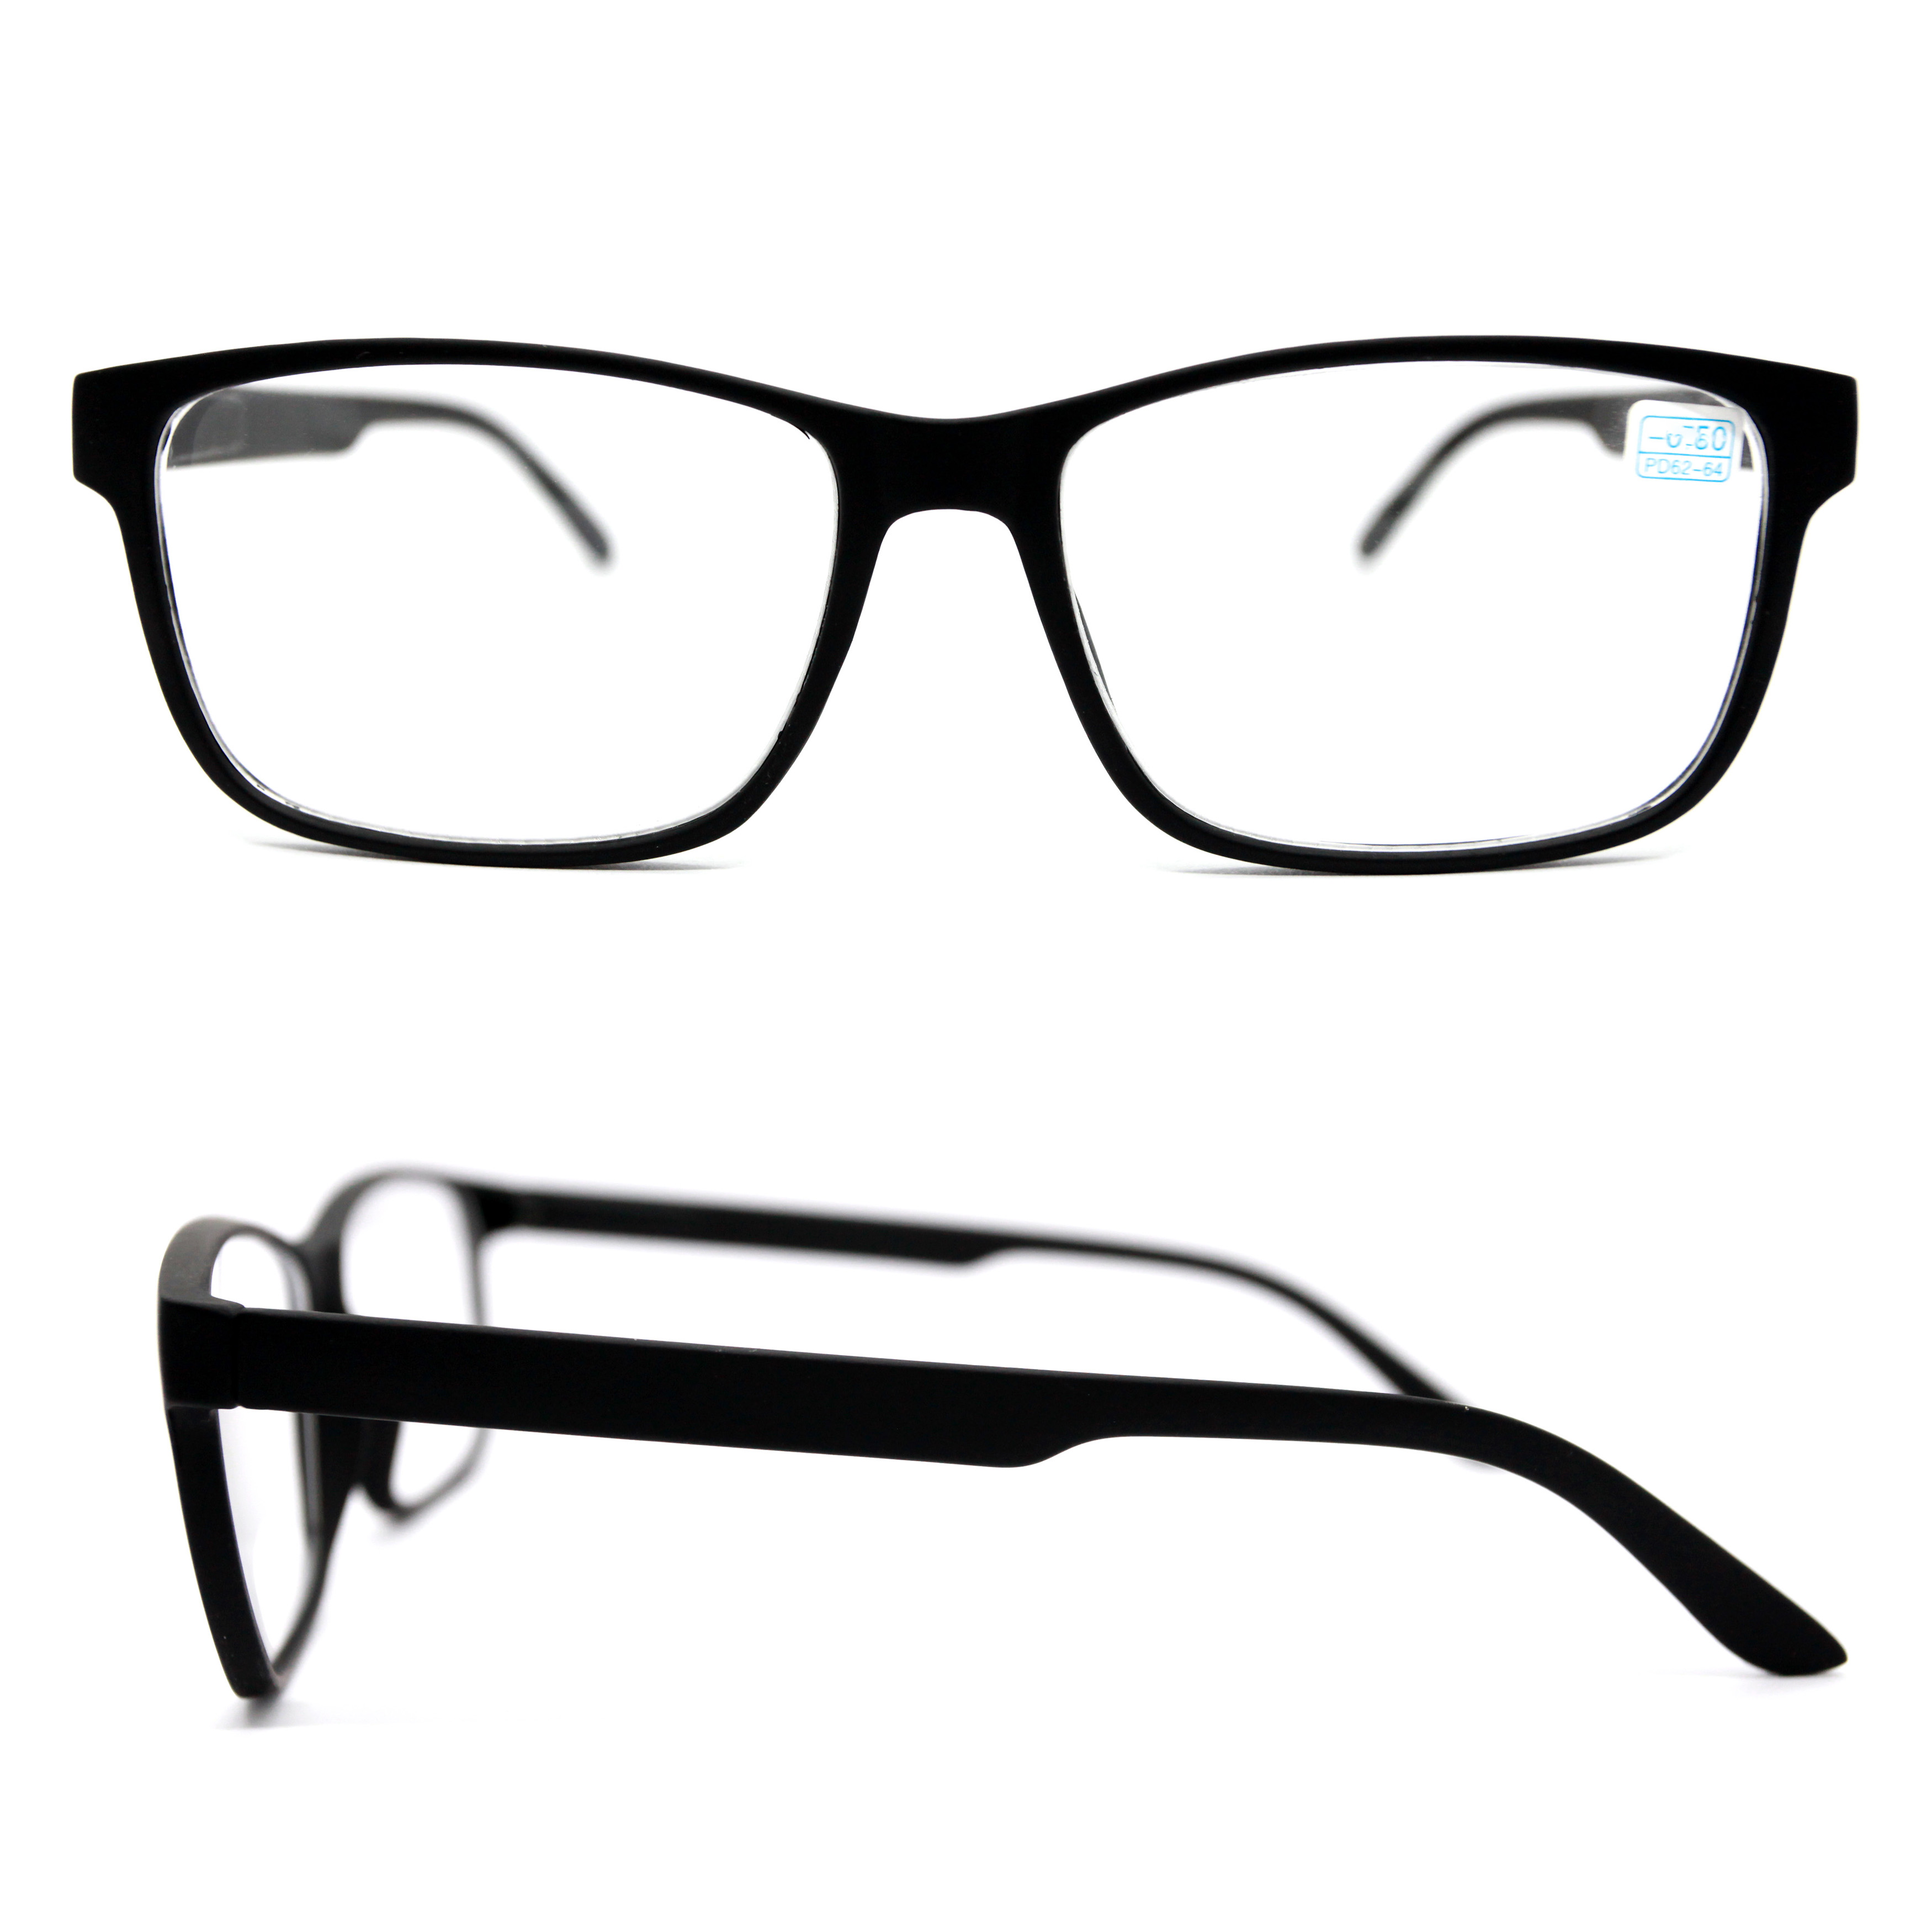 Готовые очки для зрения ВОСТОК 6642 -3,25, без футляра, черный, РЦ 62-64